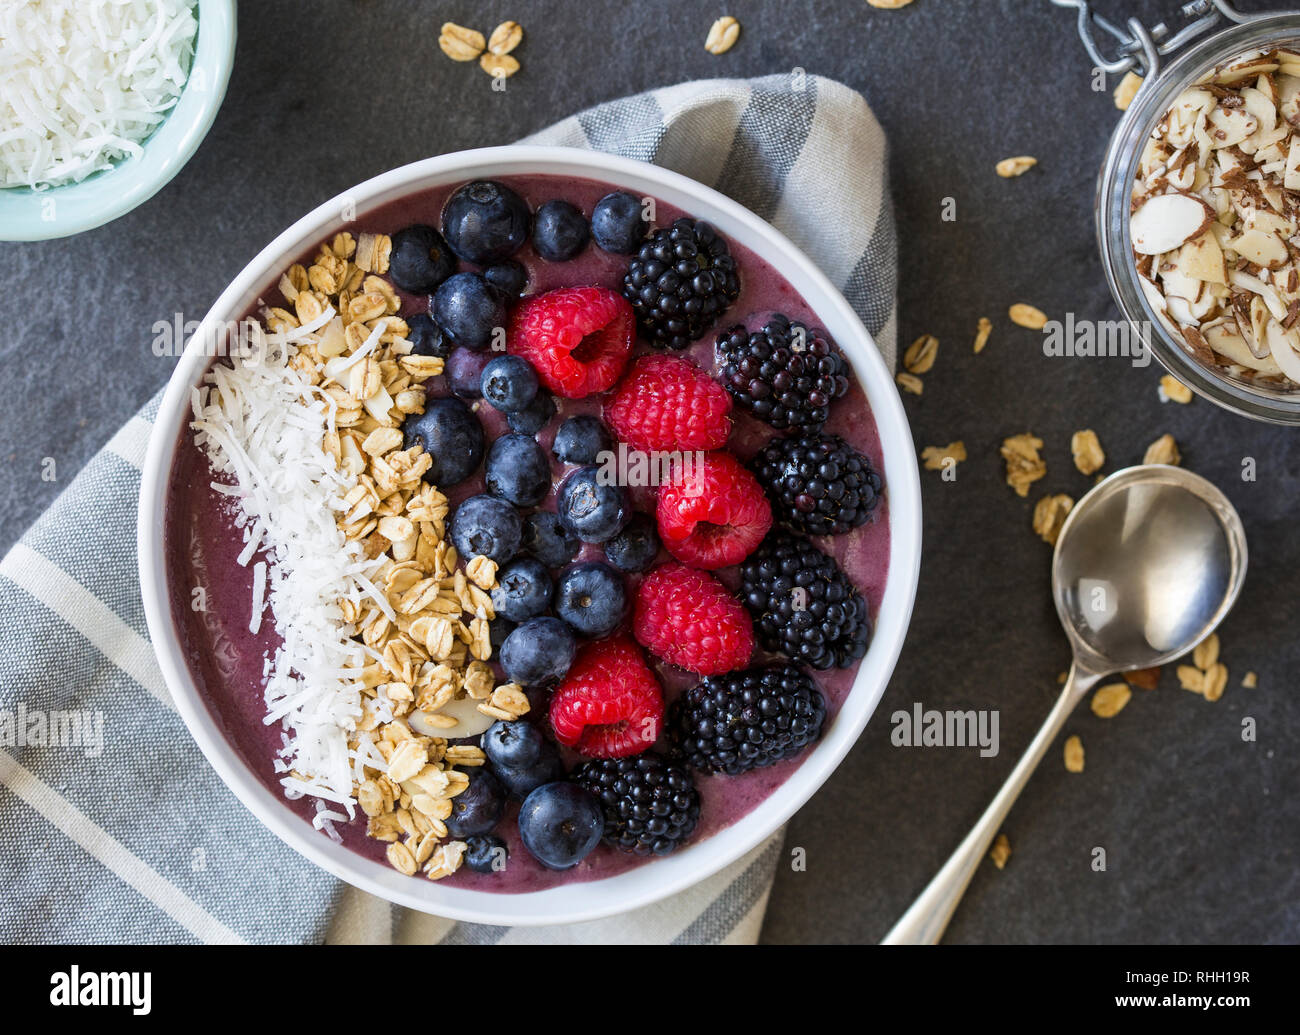 Aerial view of berries and granola in acai yogurt bowl. Stock Photo